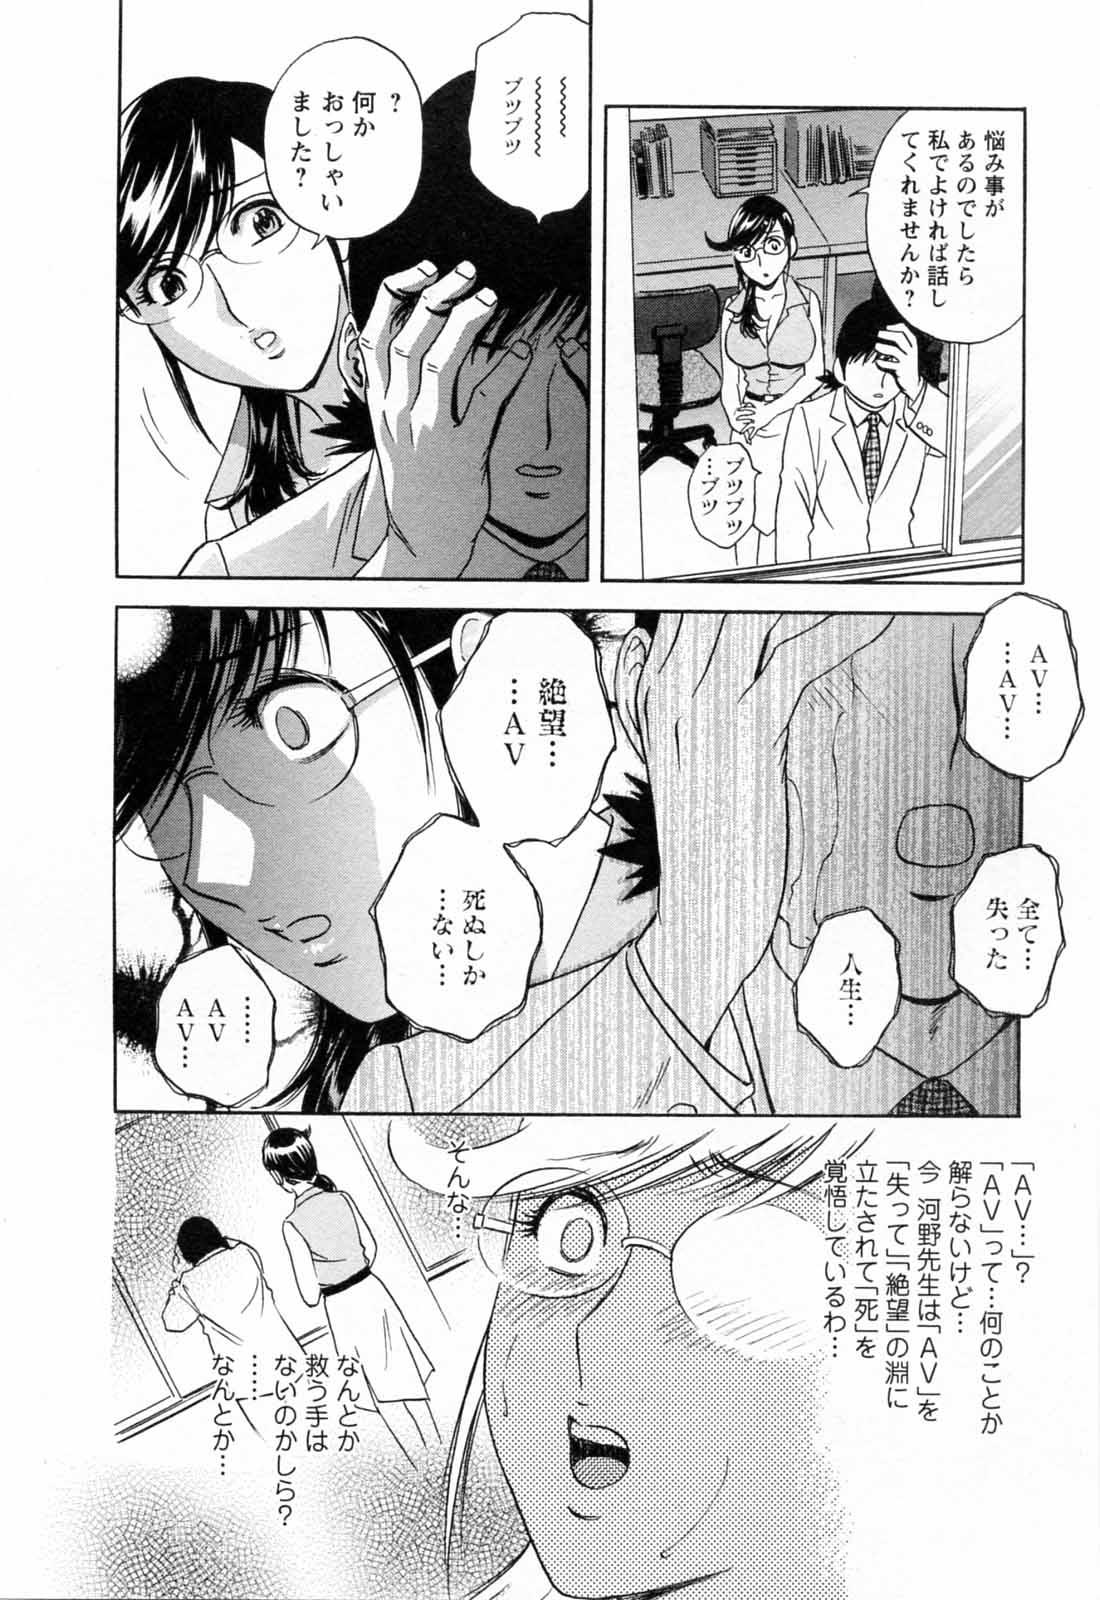 [Hidemaru] Mo-Retsu! Boin Sensei (Boing Boing Teacher) Vol.5 99